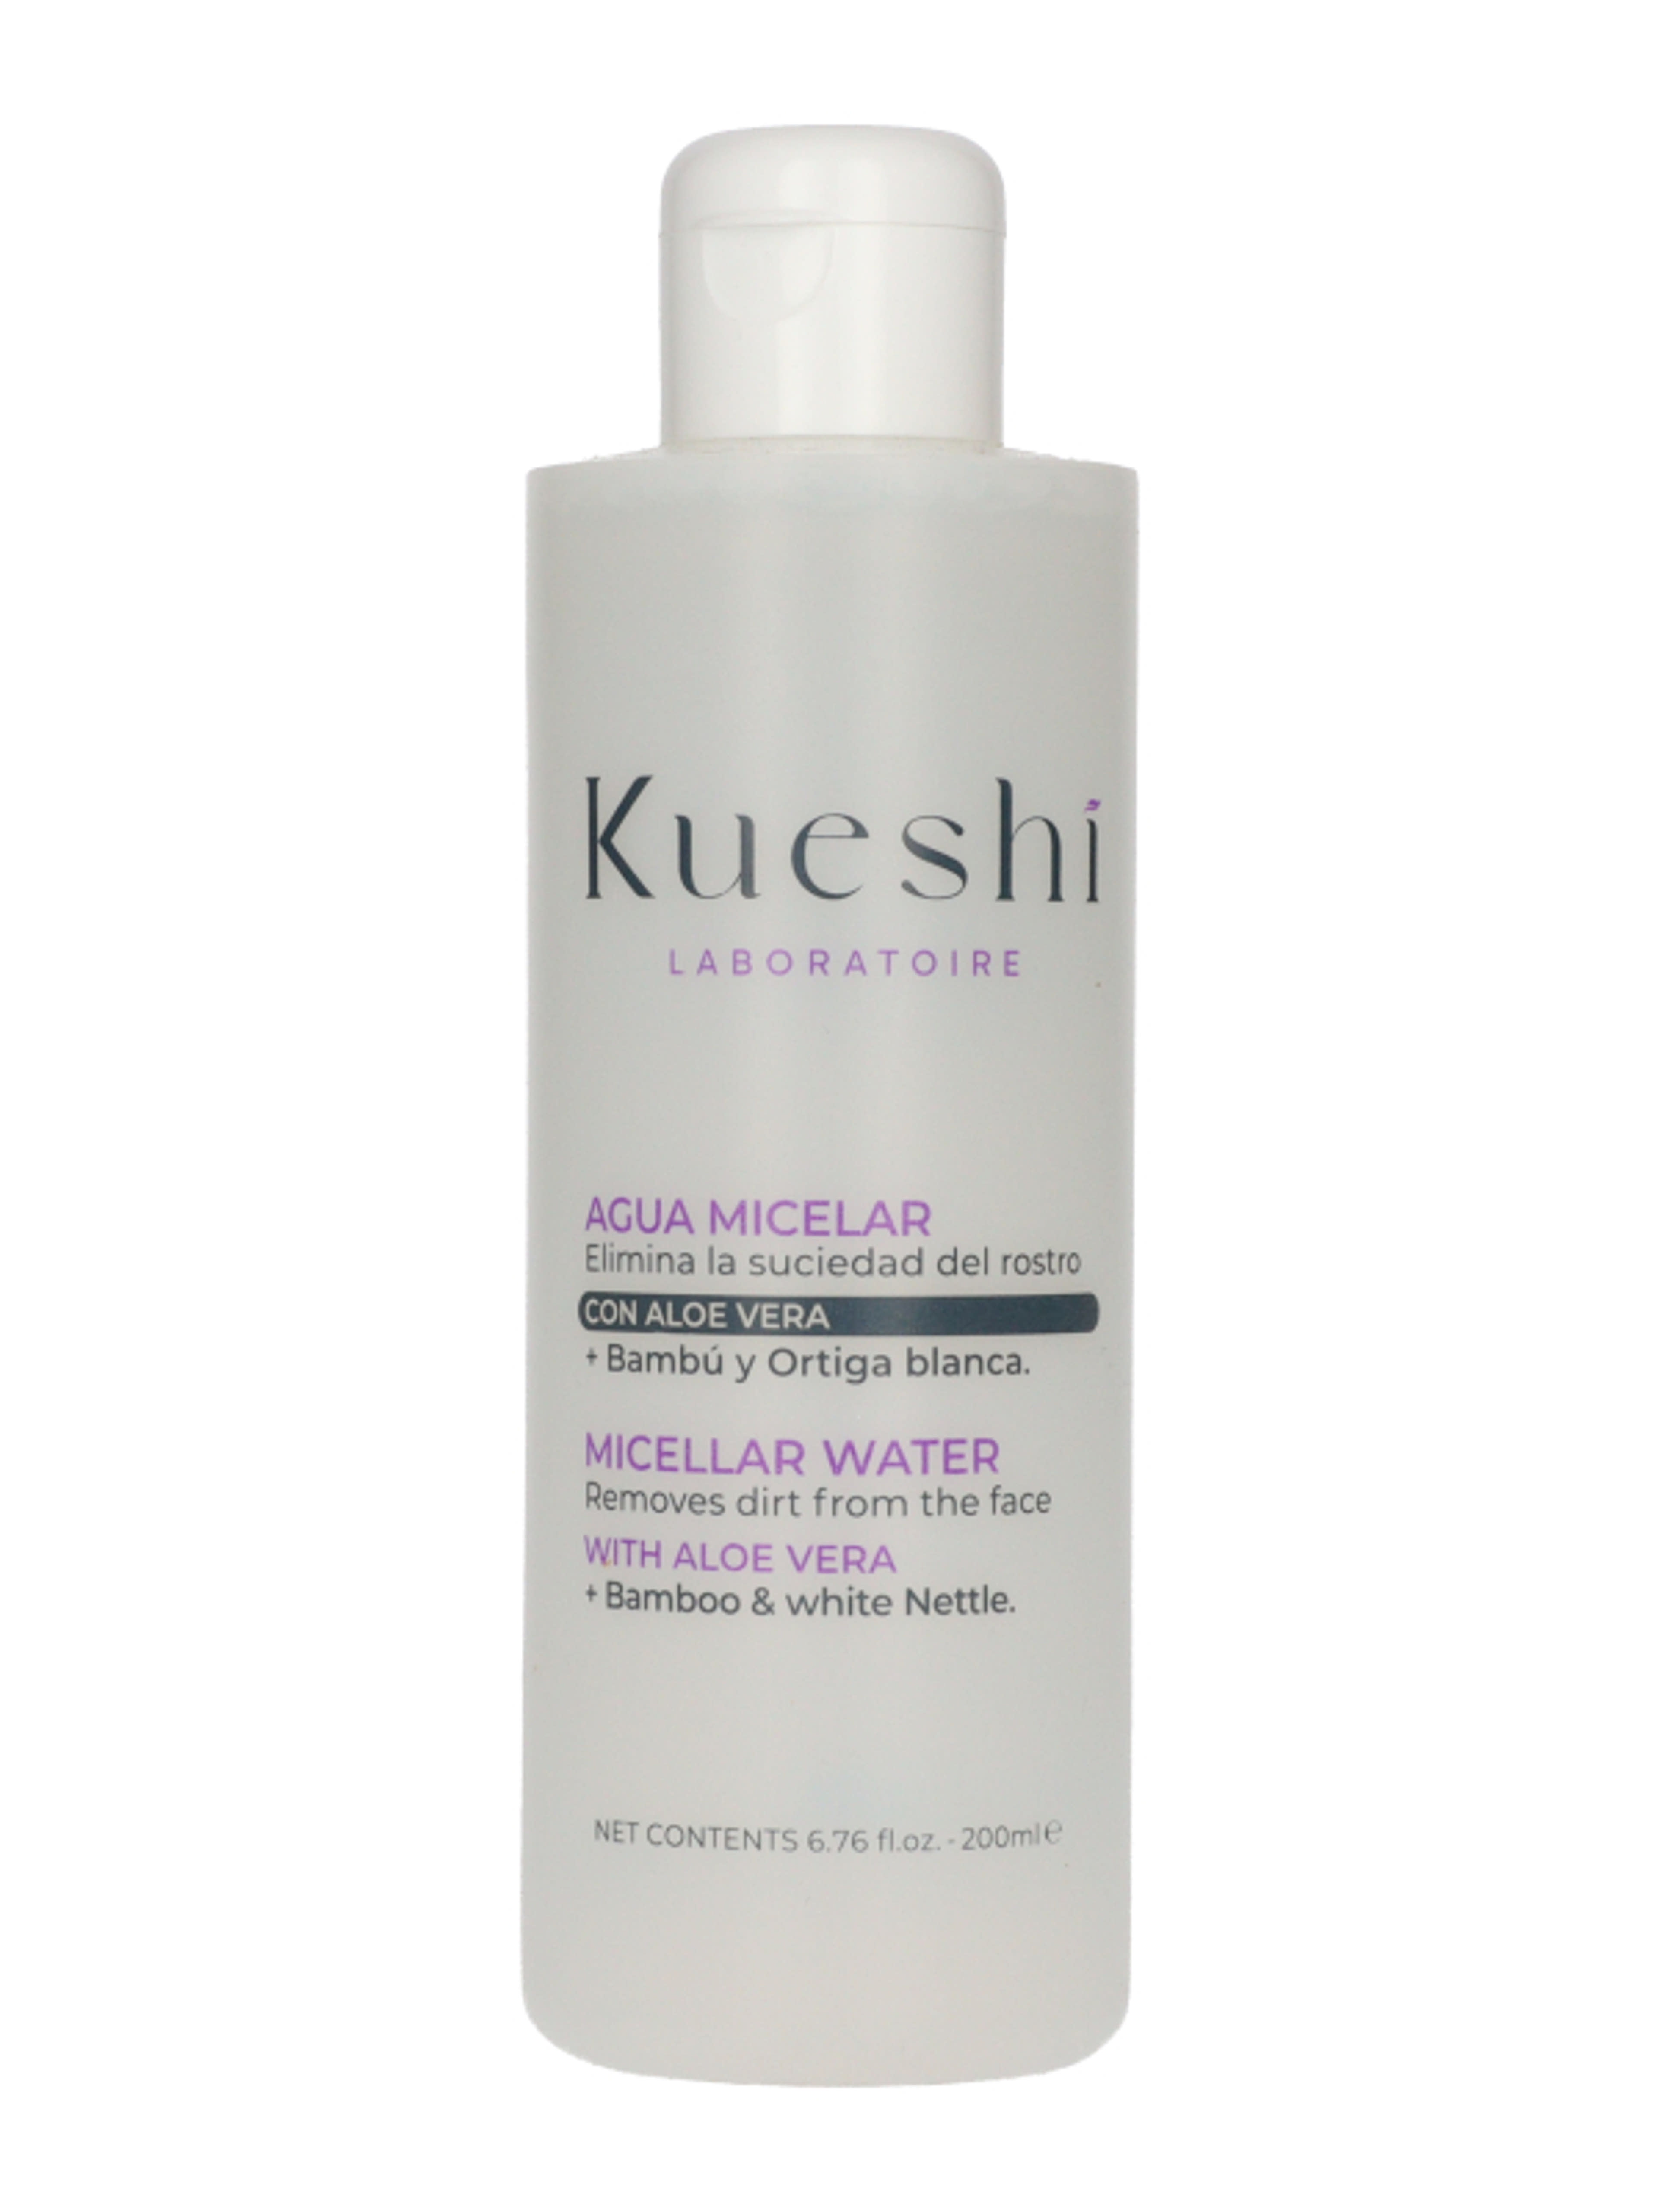 Kueshi Naturals Pure & Clean micellás víz - 200 ml